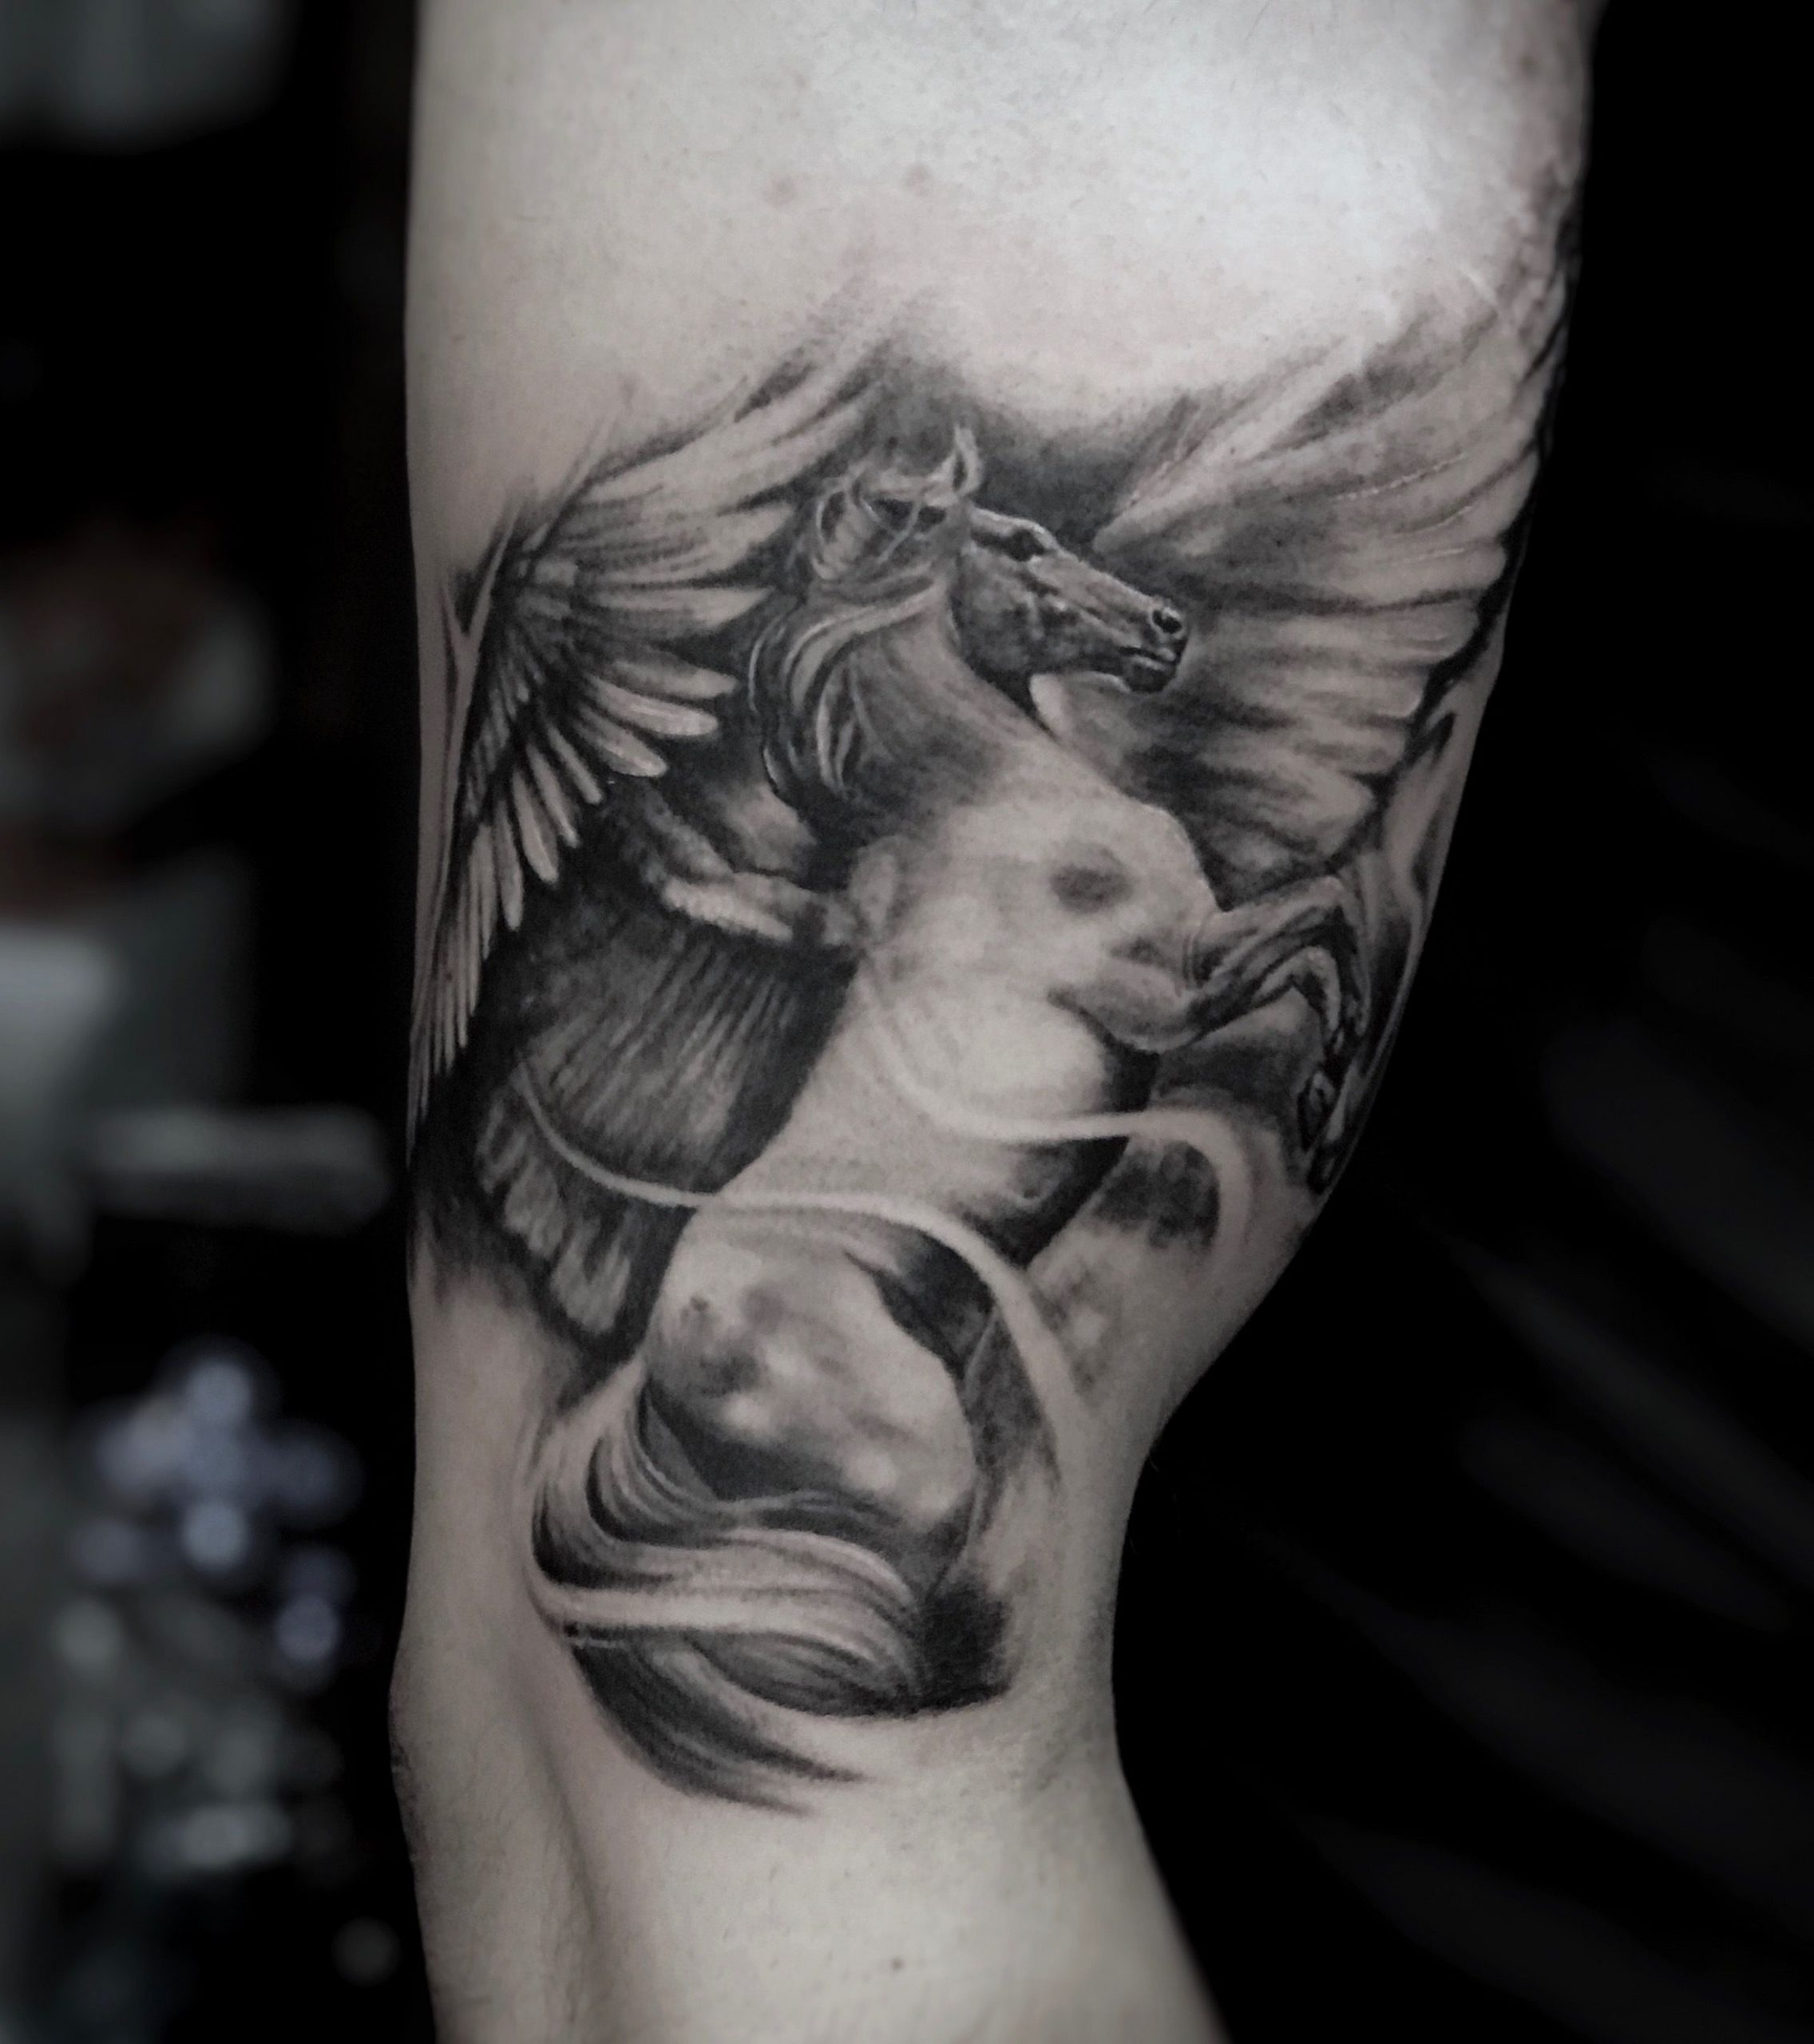 Pegasus Tattoo